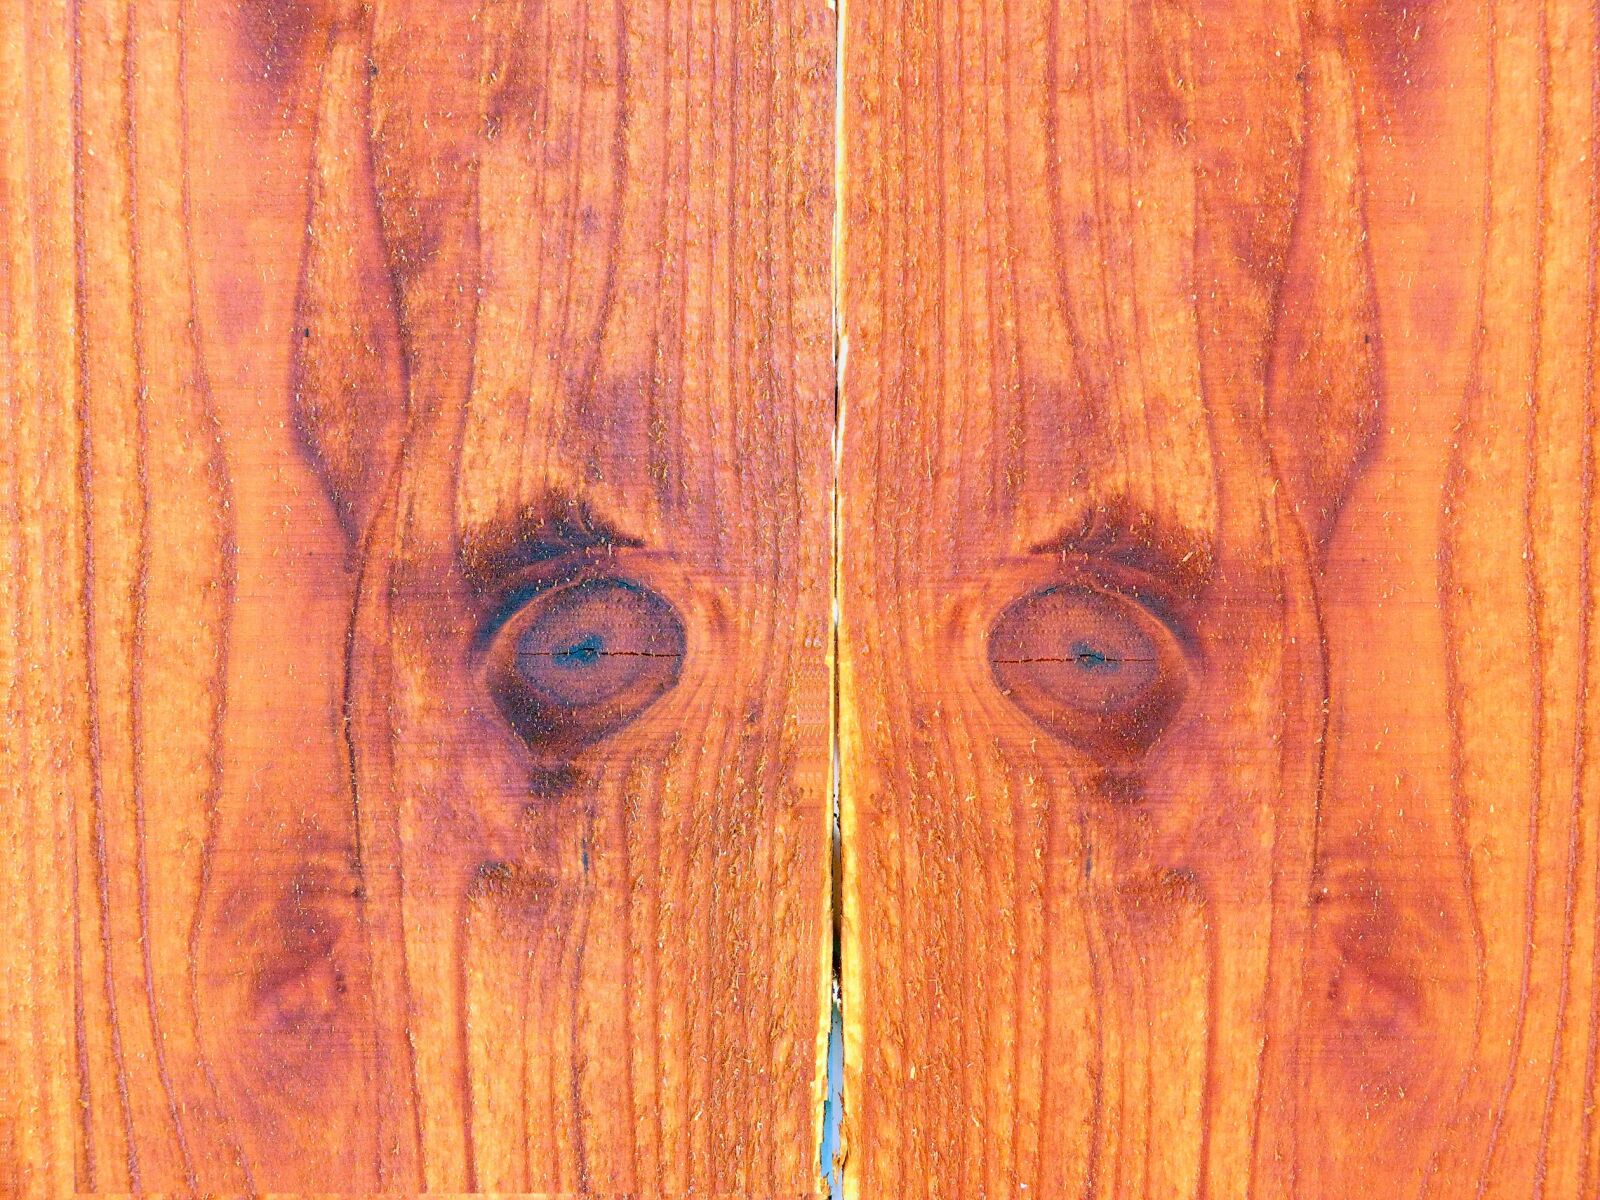 Panasonic Lumix DMC-FZ60 (Lumix DMC-FZ62) sample photo. Wood background, wood, background photography